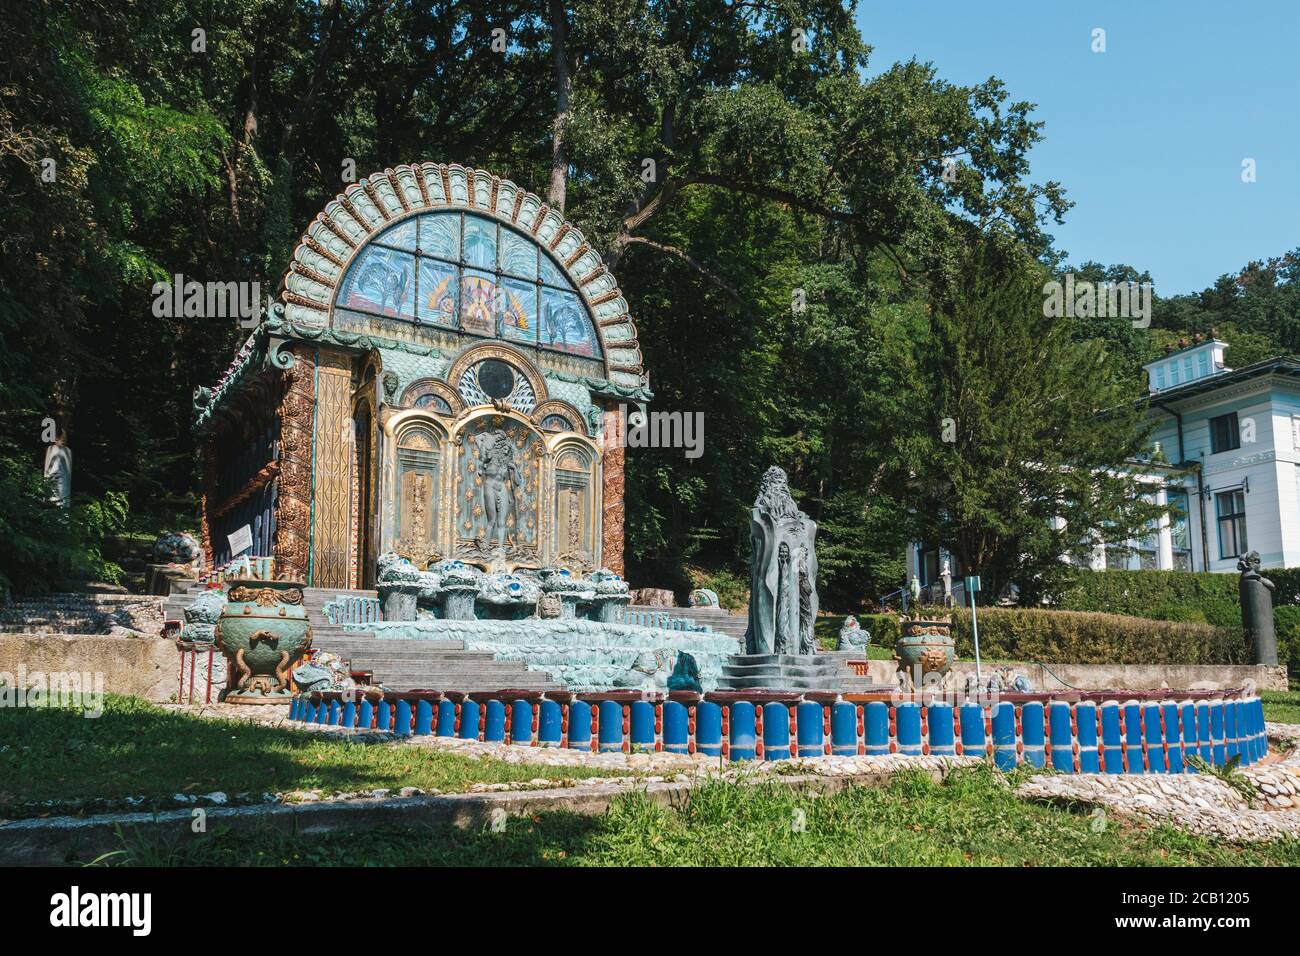 Vienne, Autriche - août 8 2020 : Maison de la fontaine Nymphaieum Omega dans le parc du musée Ernst Fuchs, à la villa Otto Wagner dans le Hütteldor Subur Banque D'Images